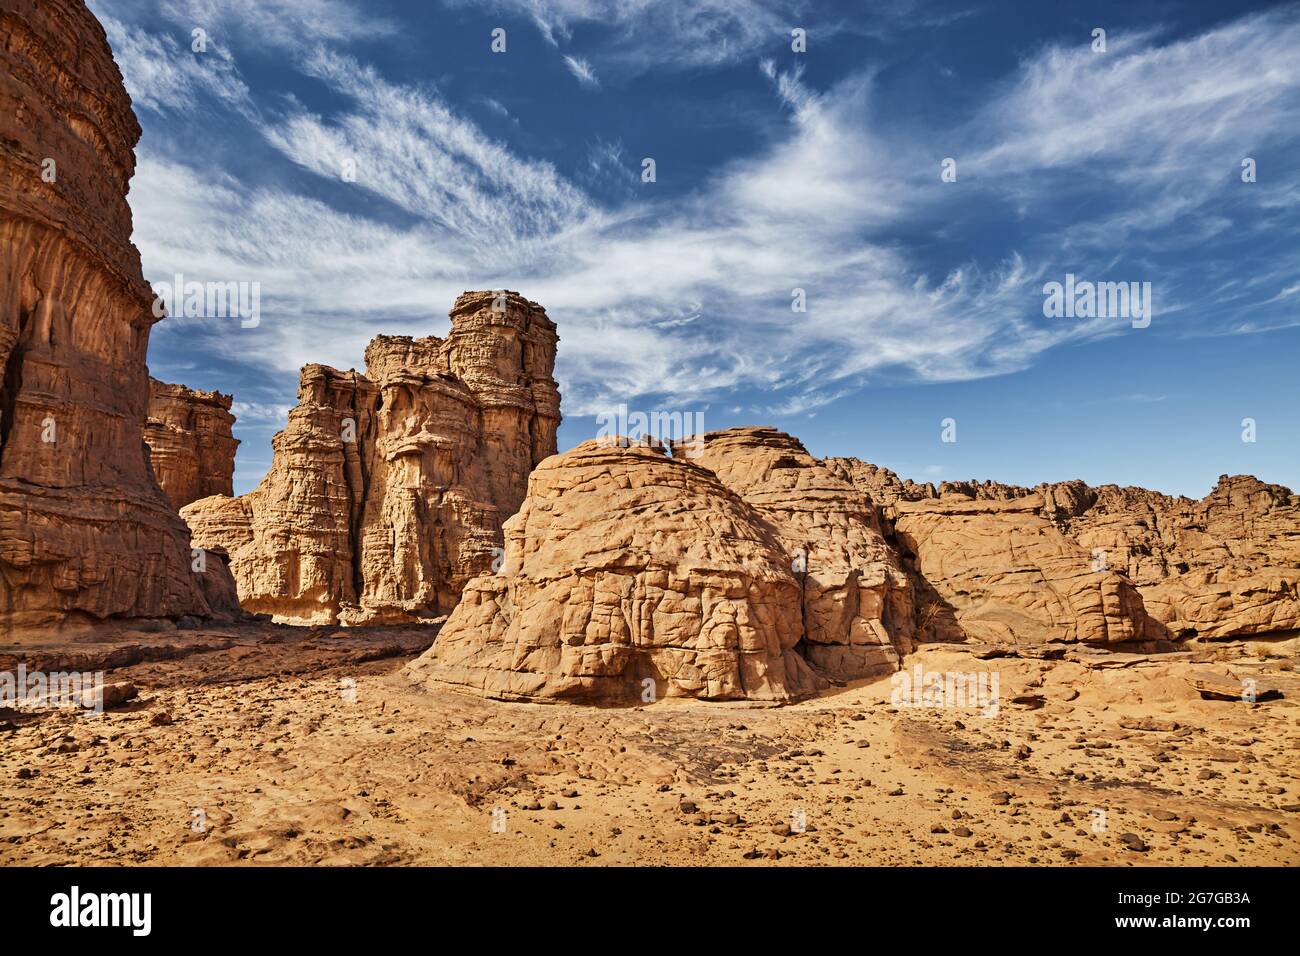 Les roches du désert du Sahara, Tassili N'Ajjer, Algérie Banque D'Images